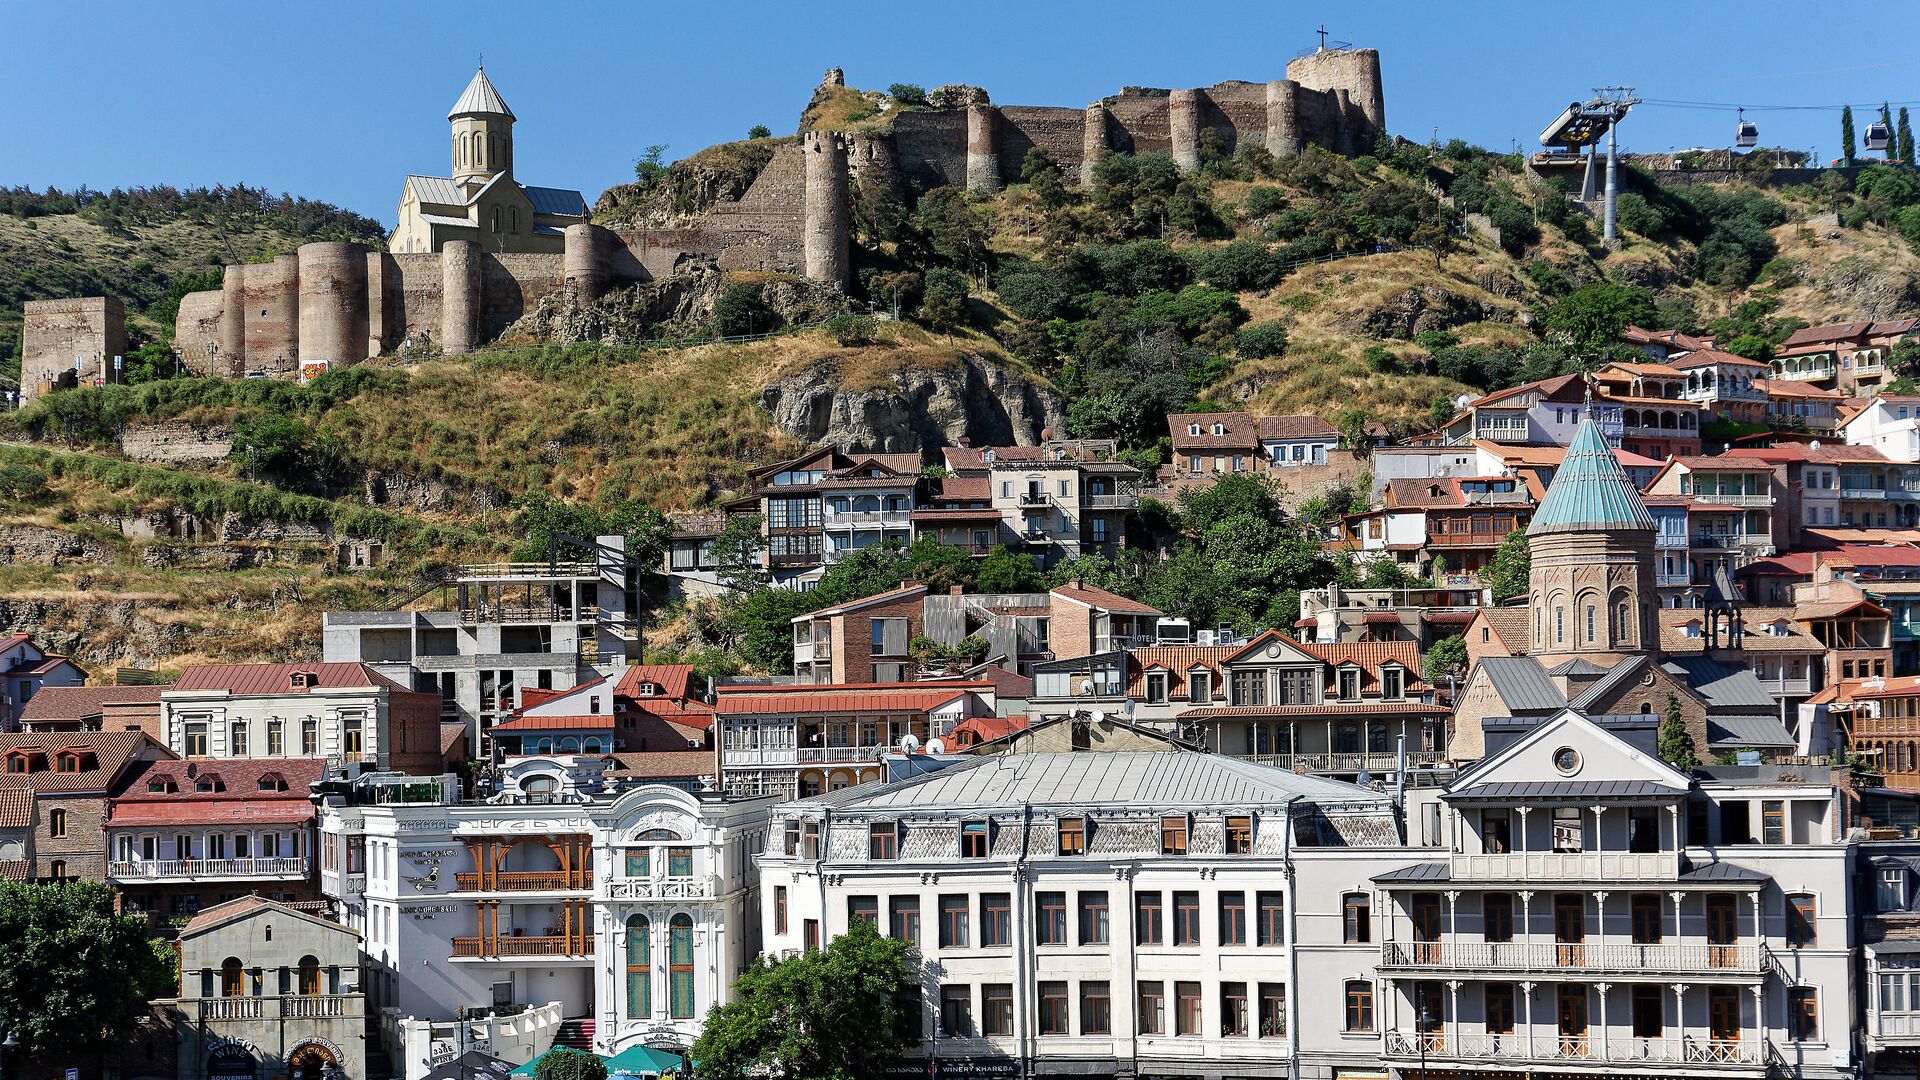 Вид на город Тбилиси - старый город, крепость Нарикала и Калаубани, церкви армянская и грузинская - Sputnik Грузия, 1920, 16.08.2021